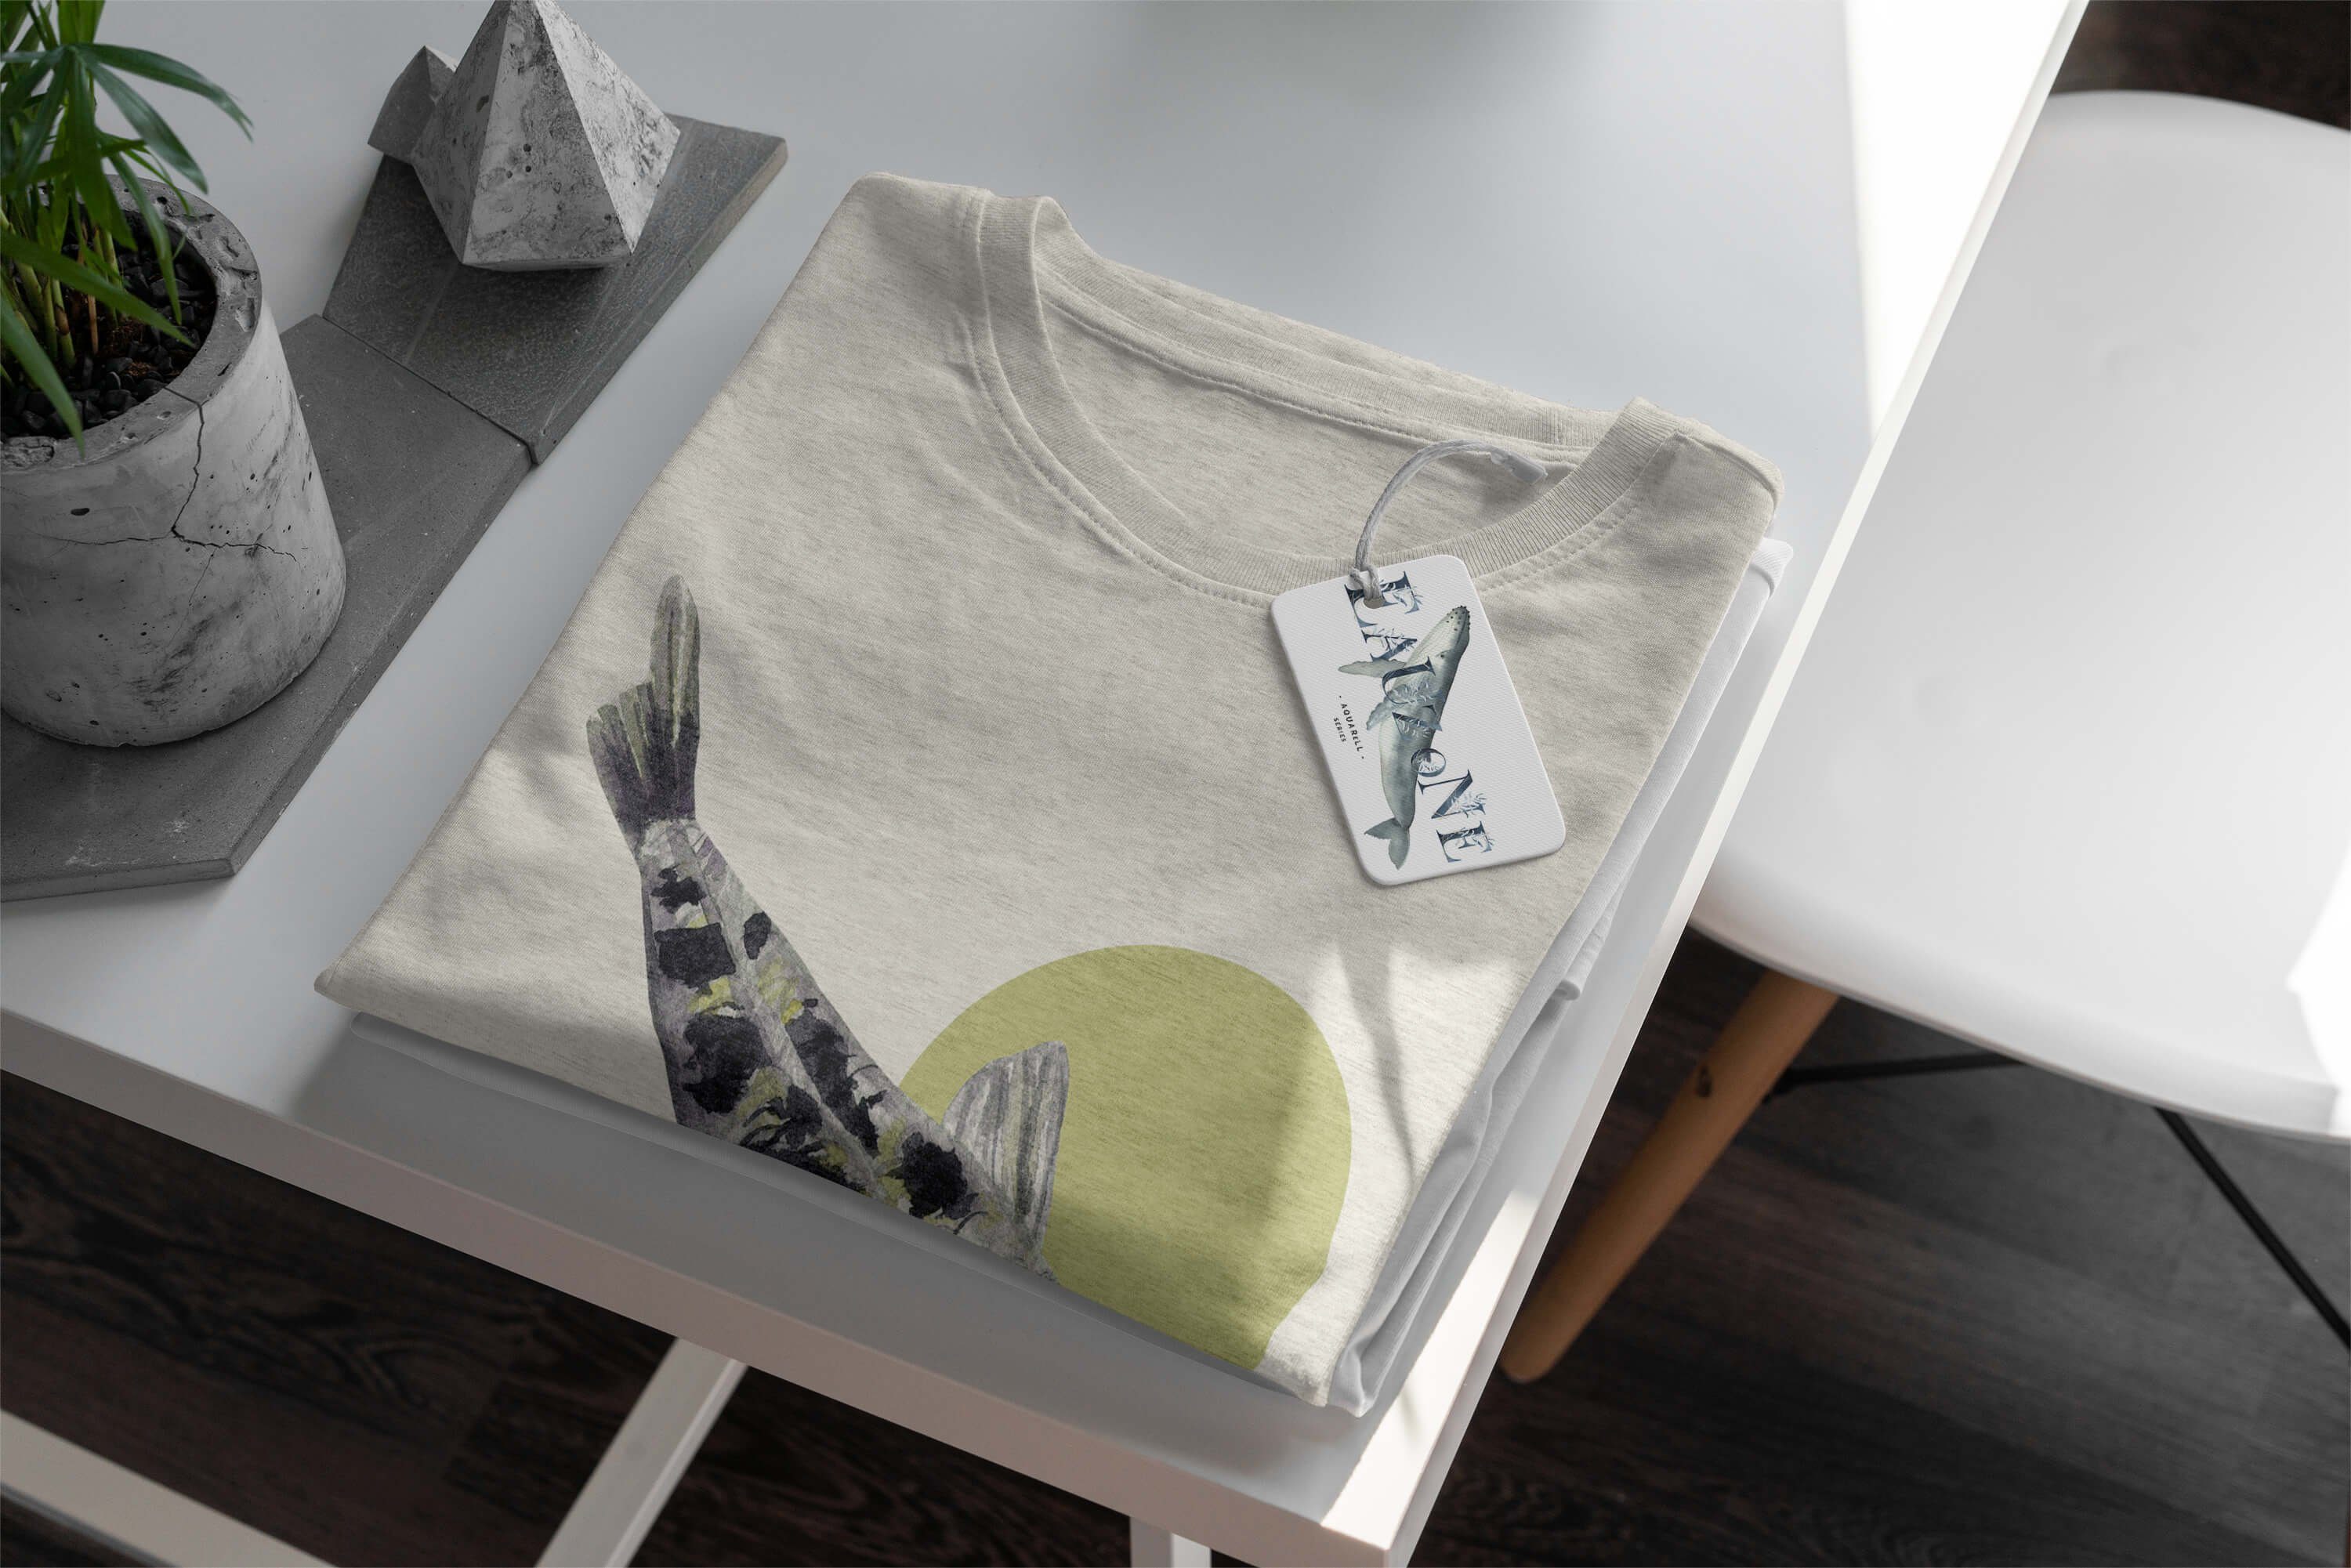 Herren Koi Karpfen (1-tlg) Sinus Ökomode Bio-Baumwolle Art Shirt gekämmte T-Shirt Nachhaltig Motiv T-Shirt Wasserfarben 100%